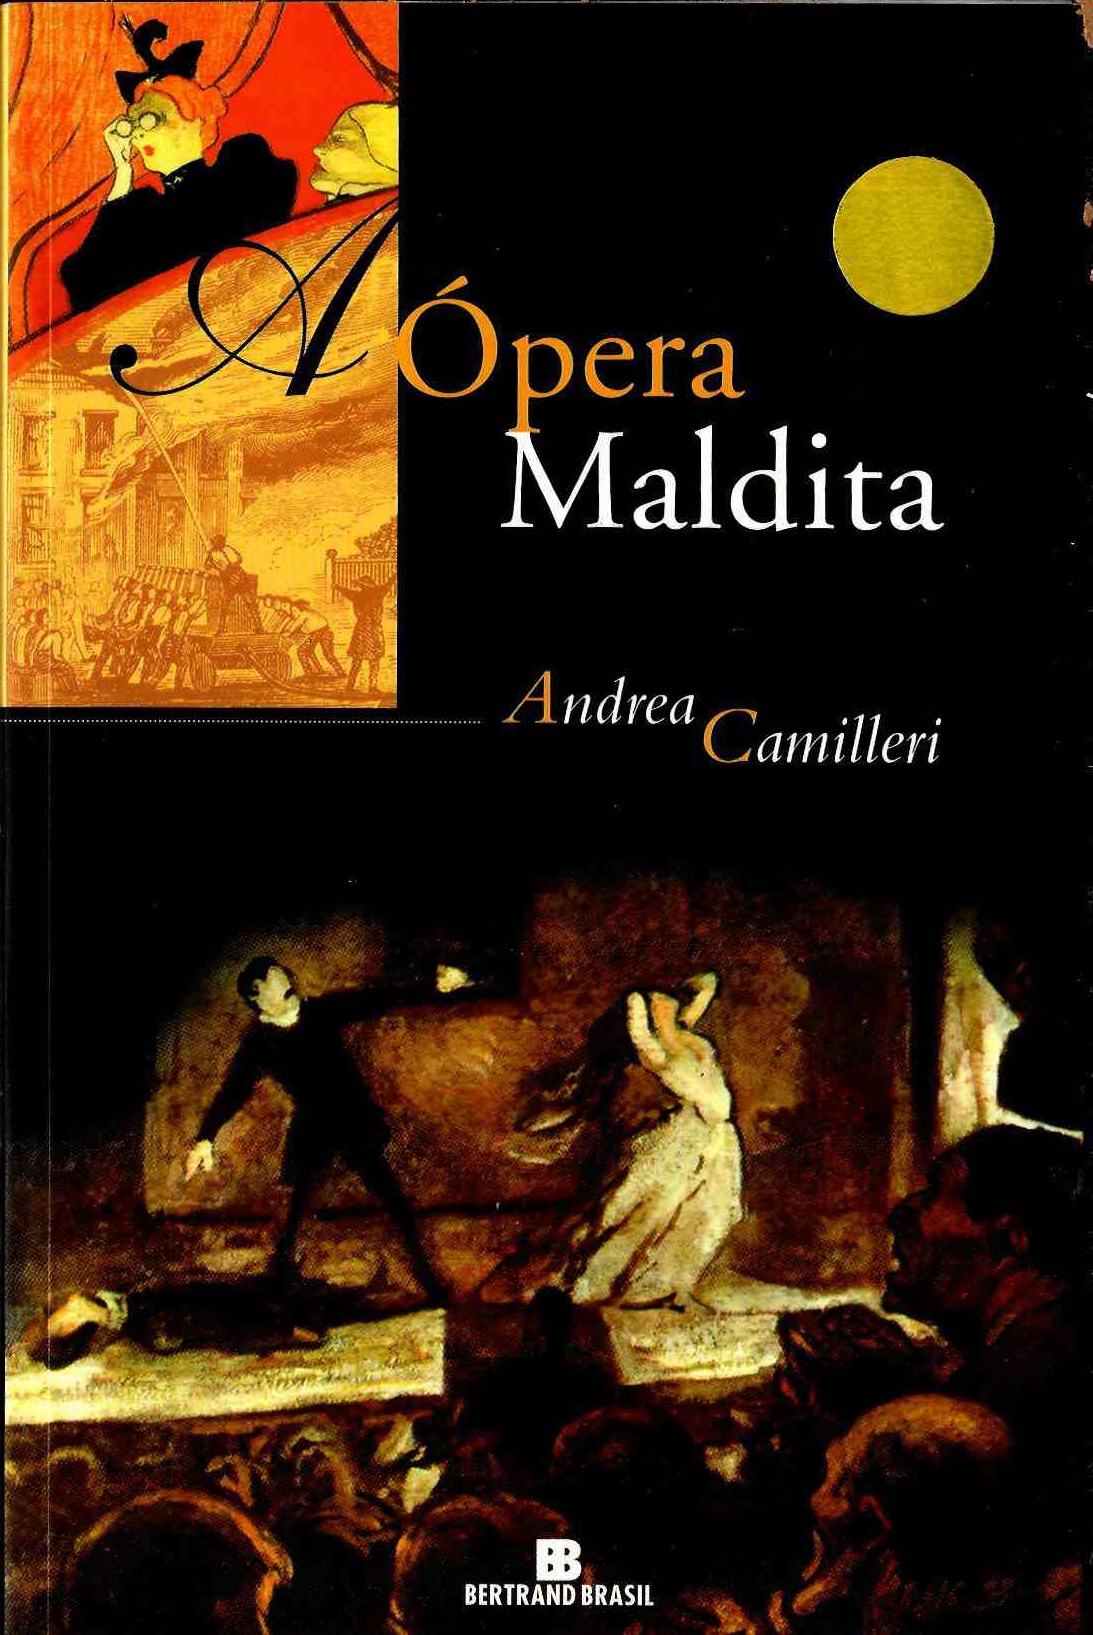 https://www.literaturabrasileira.ufsc.br/_images/obras/a_opera_maldita_2004_(1)_ok.jpg